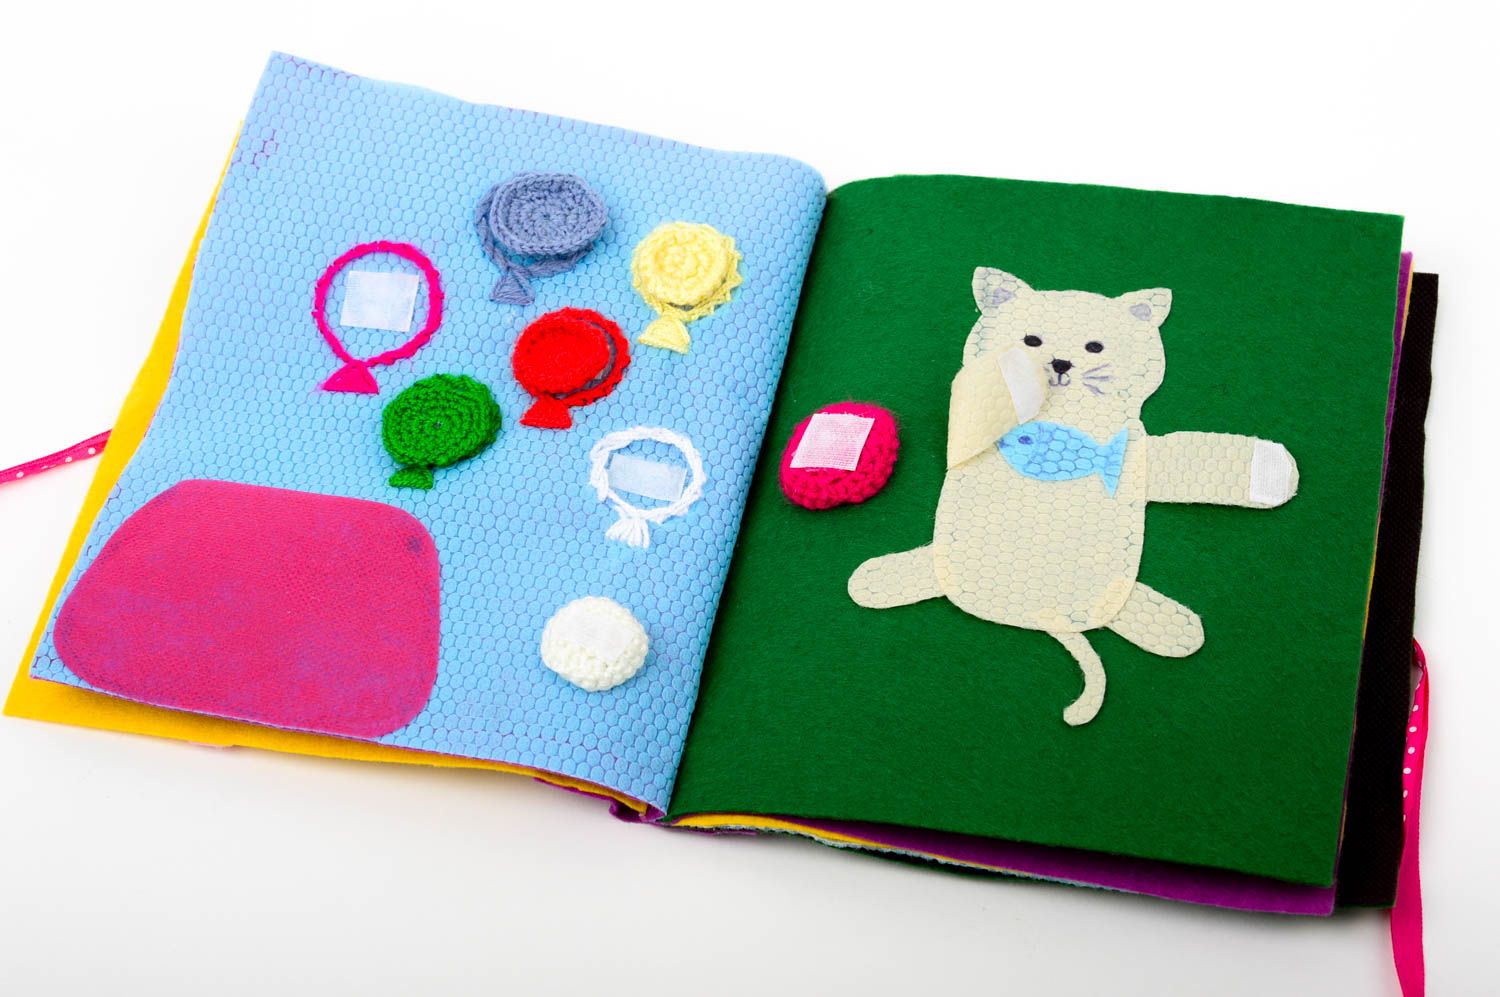 Развивающая книжка для детей ручной работы мягкая игрушка интересный подарок фото 4